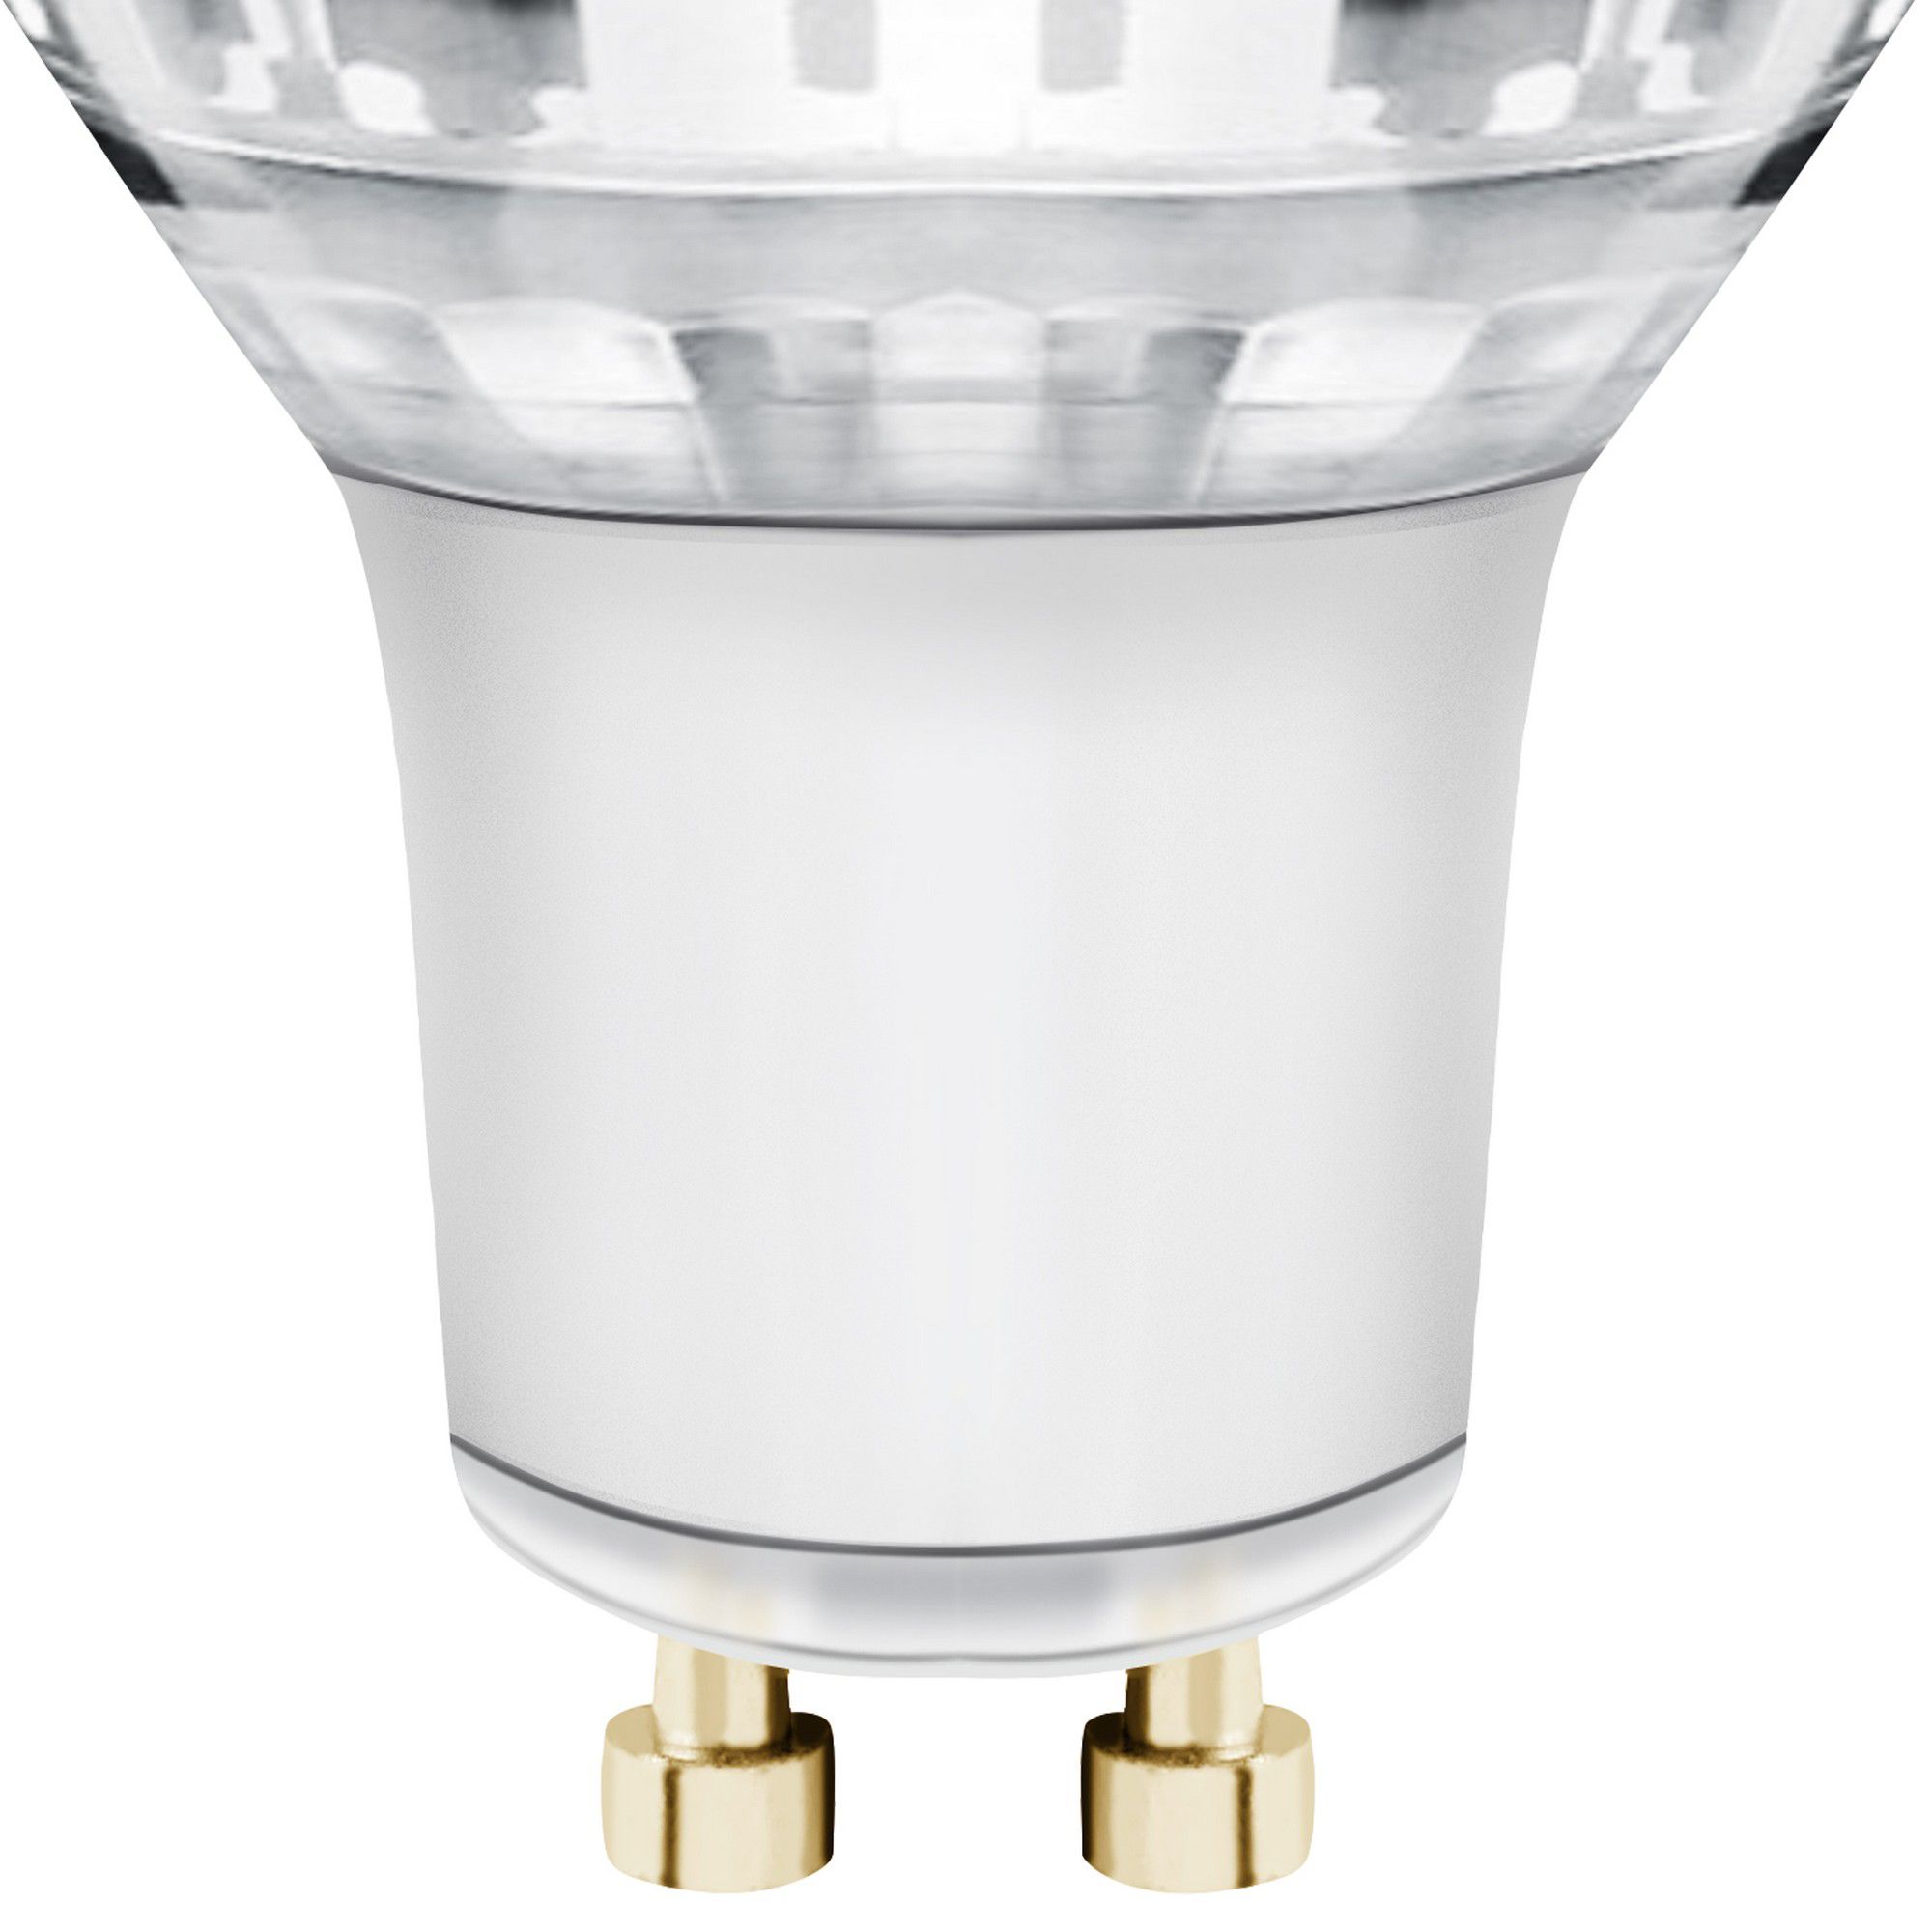 Ampoule LED céramique spot GU10 lampe 10W sortie 100W lumière diffusée 120  degrés 854 lumens 230V LIGHT 4000K